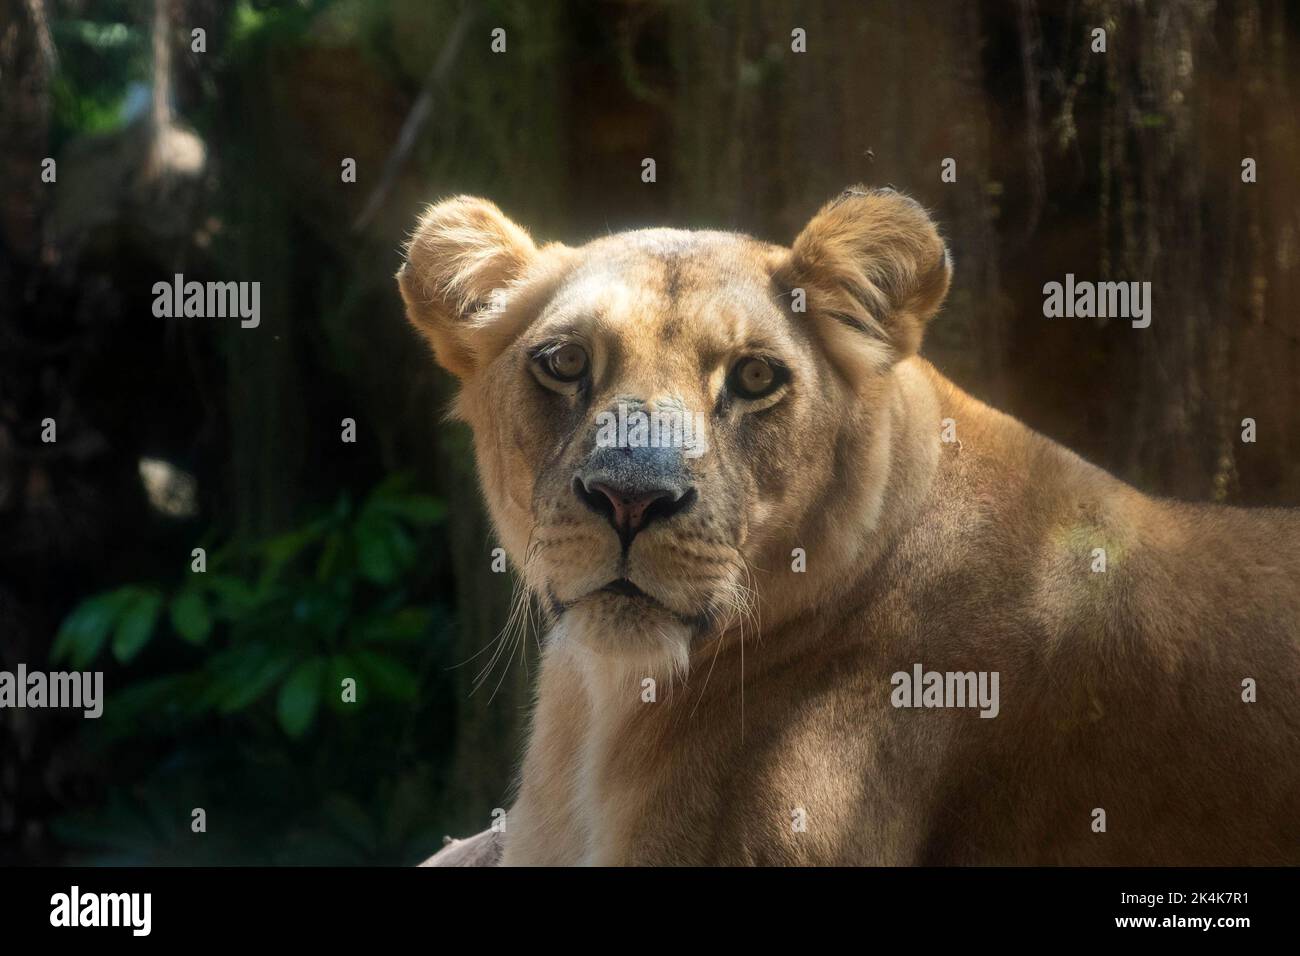 Weibliches Löwen- oder Löwenporträt Stockfoto